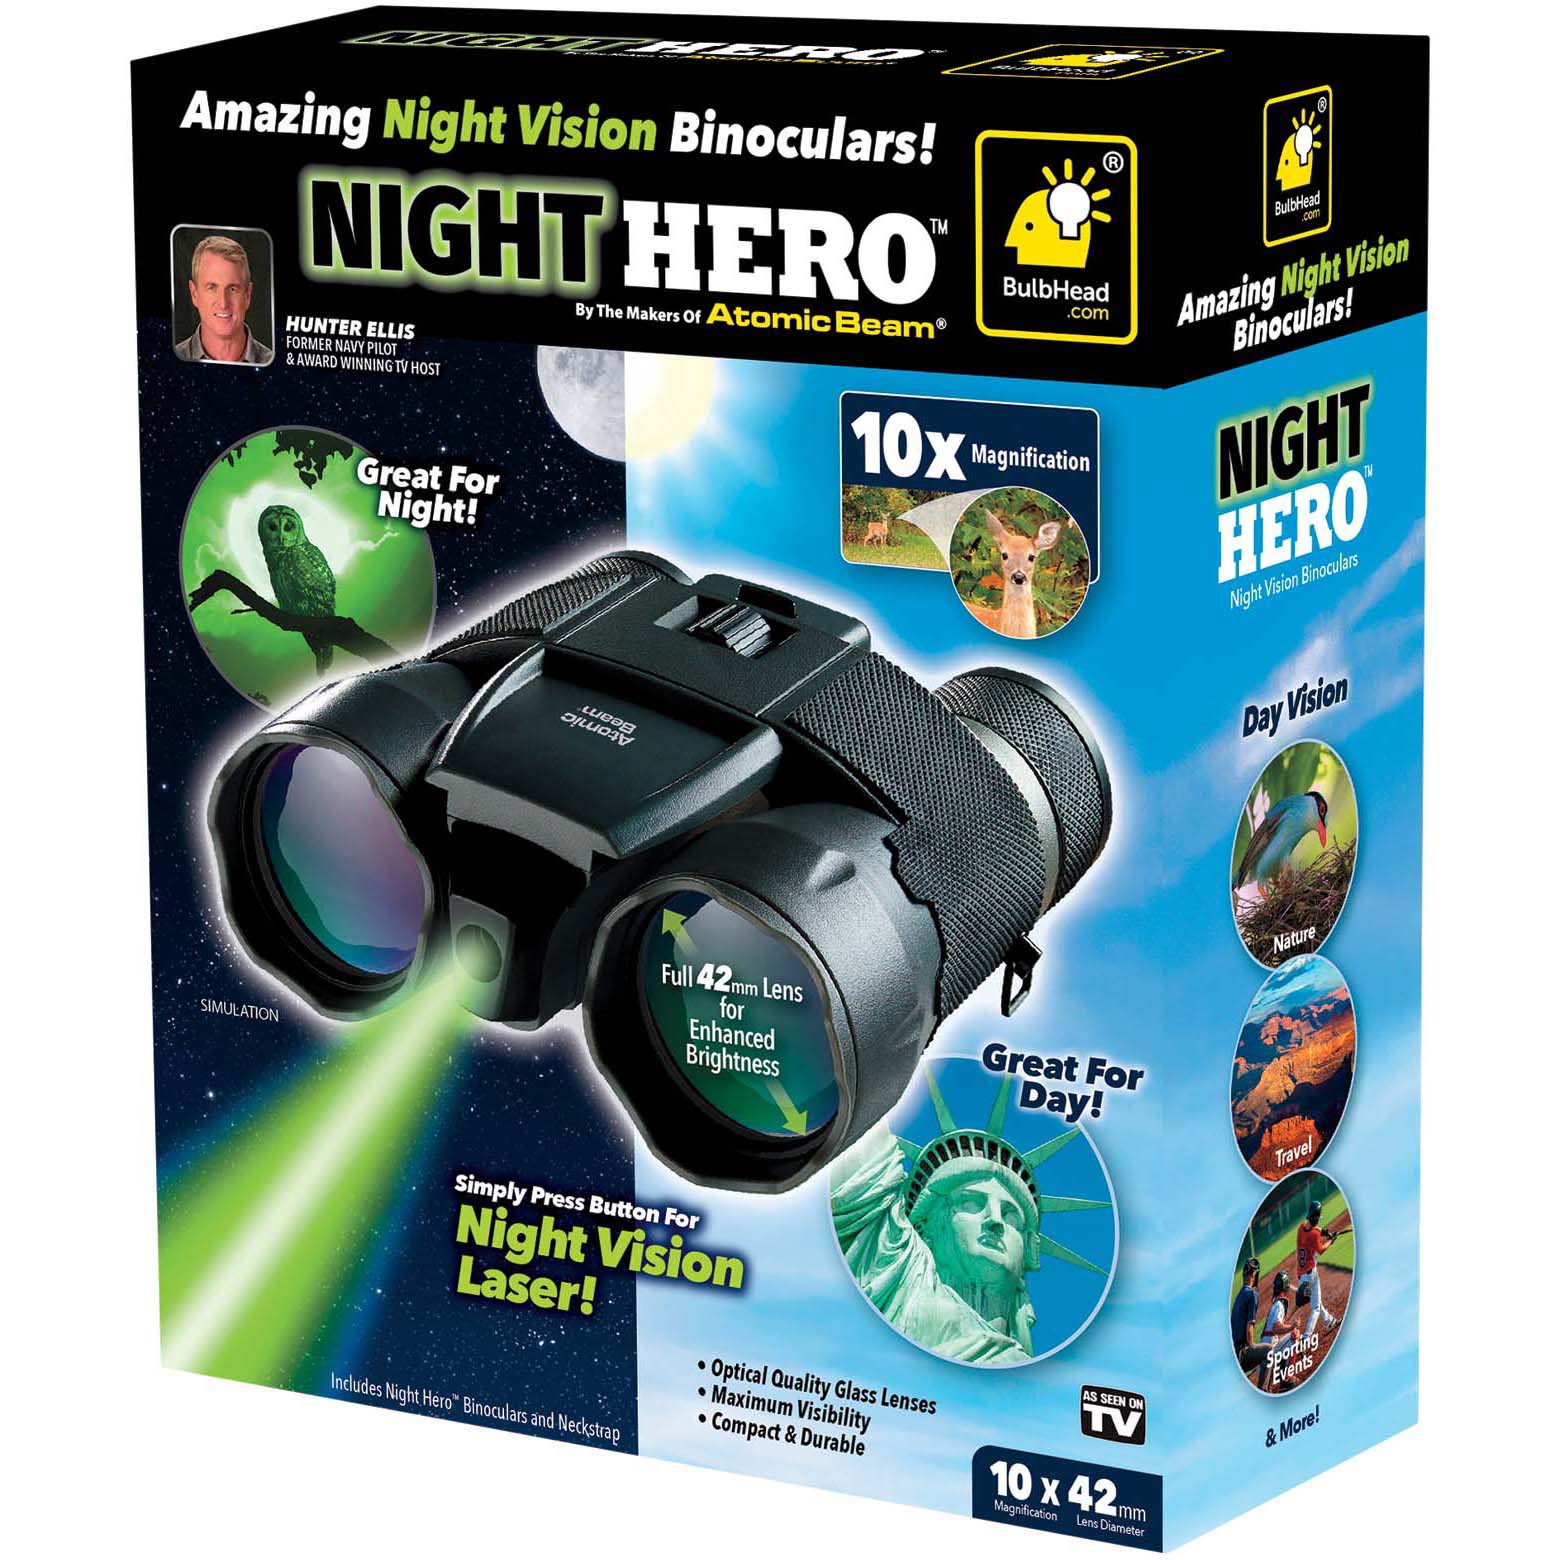 night hero binoculars by atomic beam